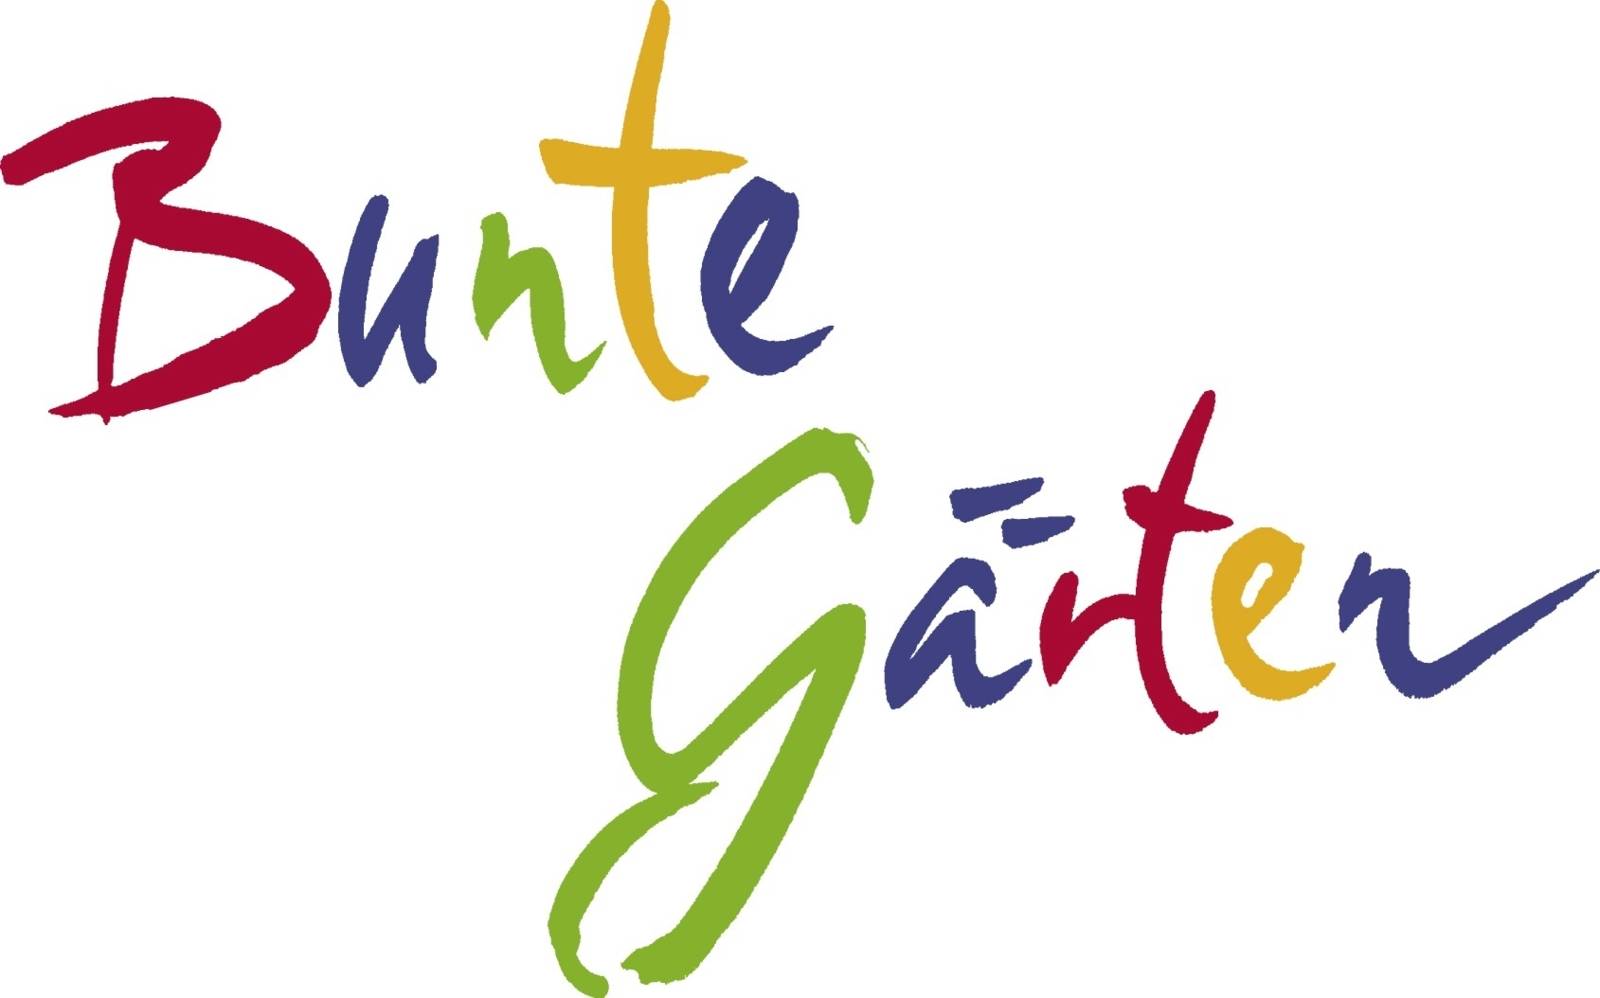 Logo zum Wettbewerb "Bunte Gärten".